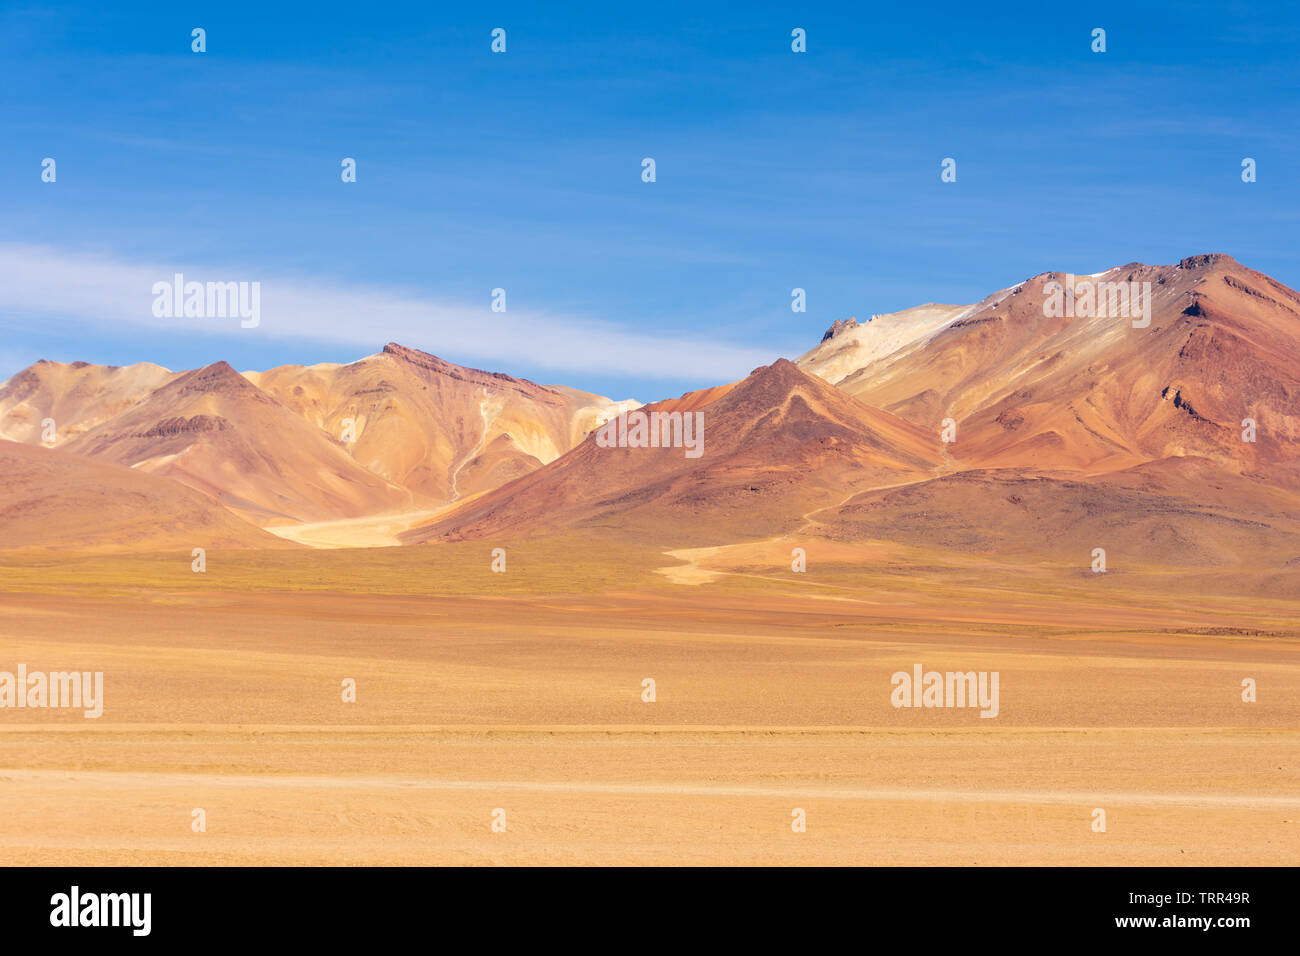 The colourful Andes mountain range in the Salvador Dali Desert (Desierto de Salvador Dali) in the Altiplano region of Bolivia. Stock Photo